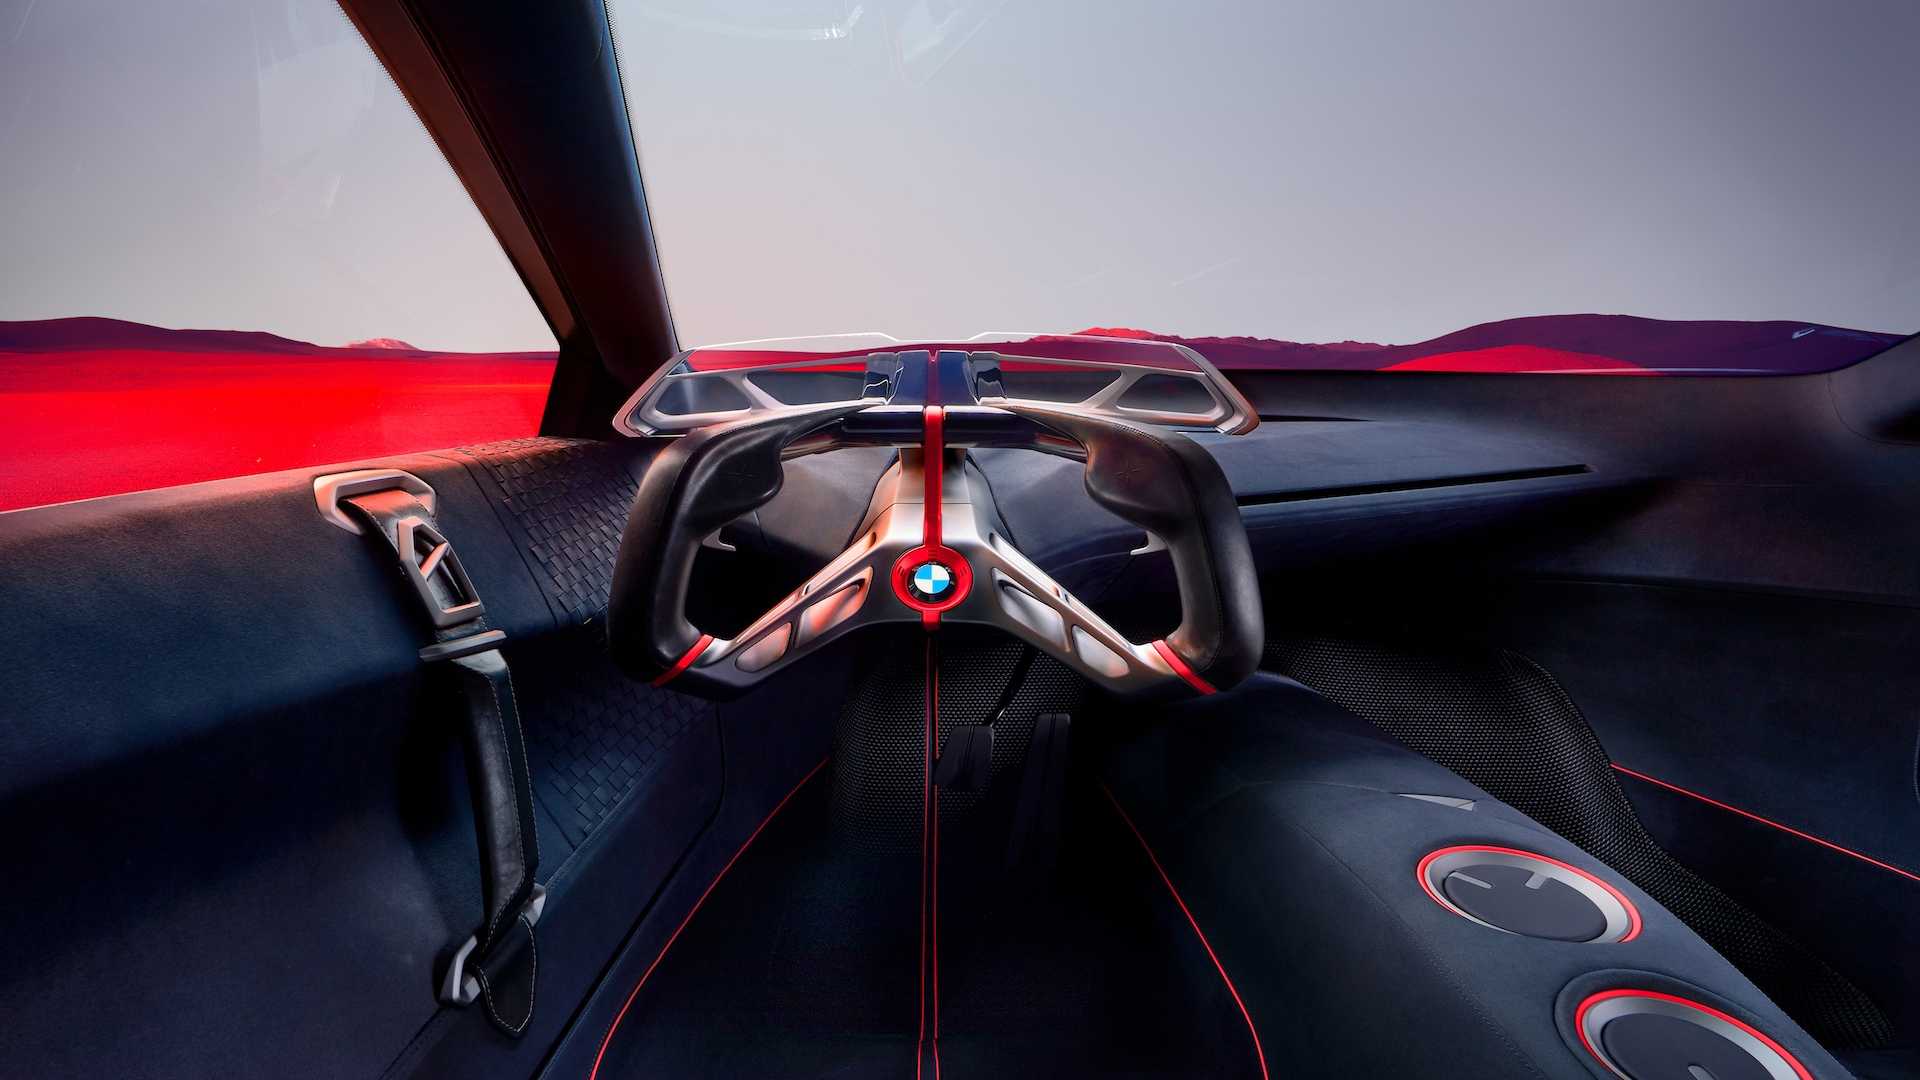 نگاهی به آینده: طراحی کابین خودروهای کانسپت